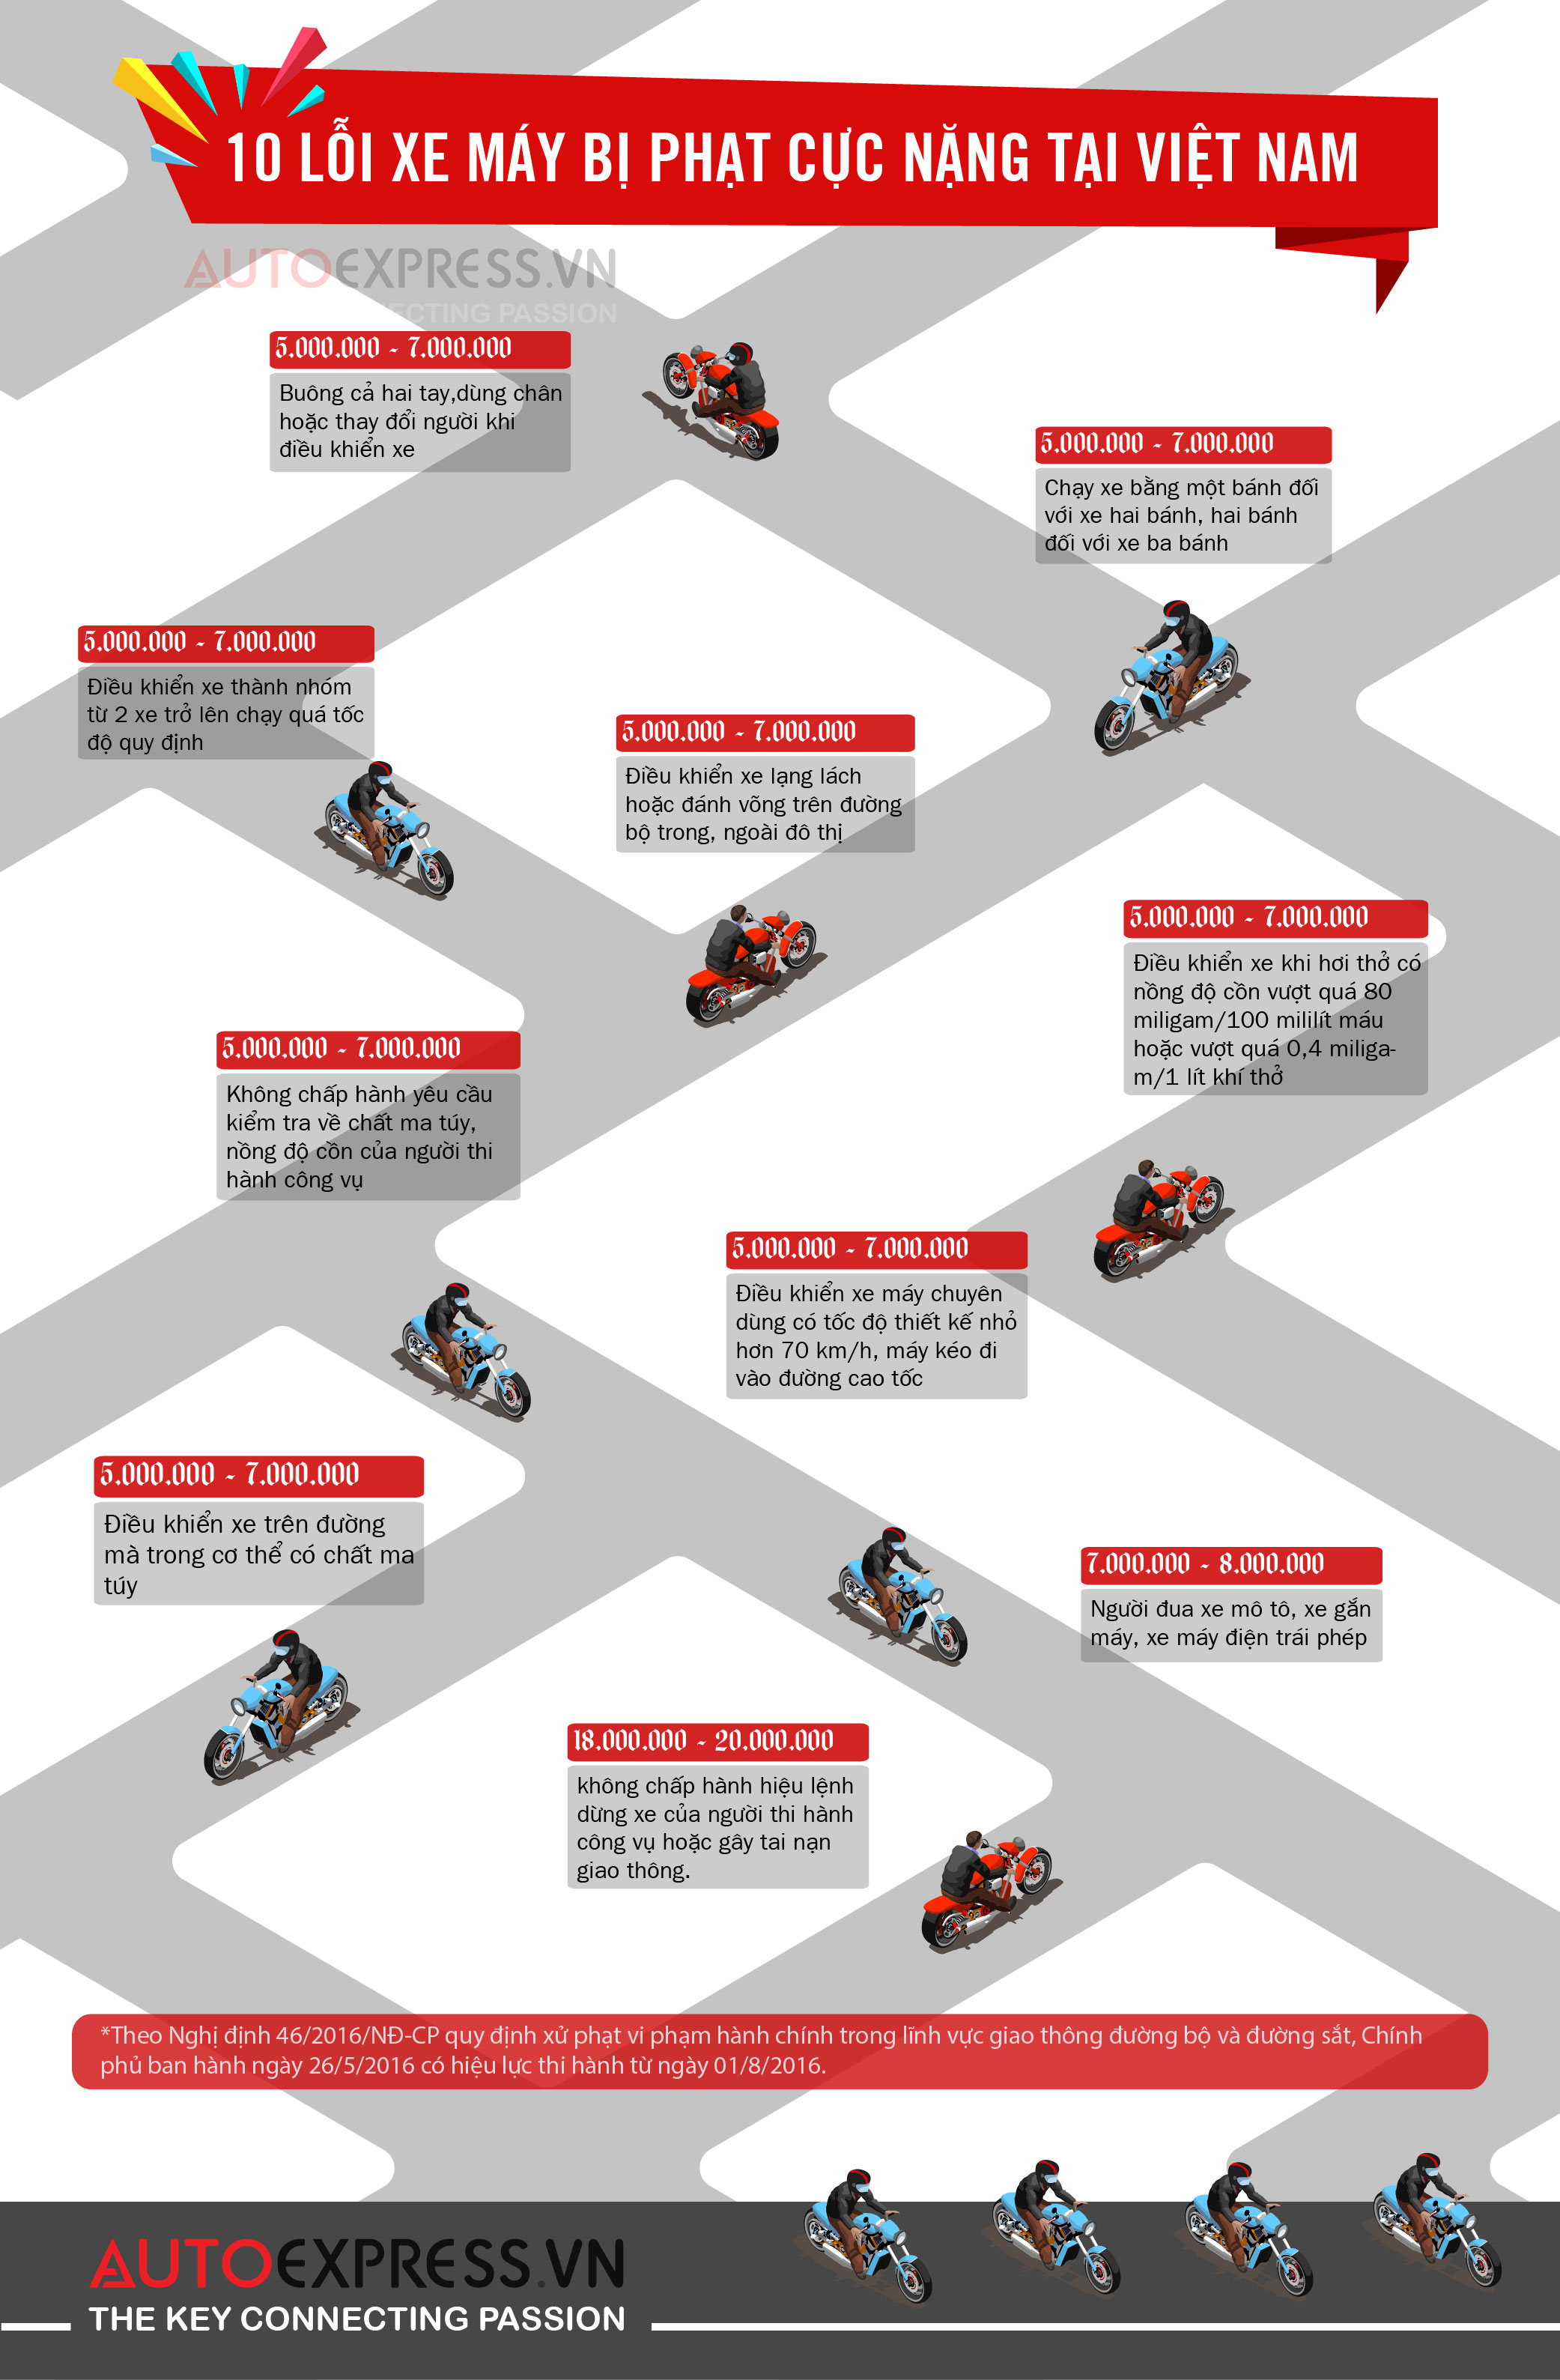 10 lỗi xe máy vi phạm giao thông bị phạt cực nặng